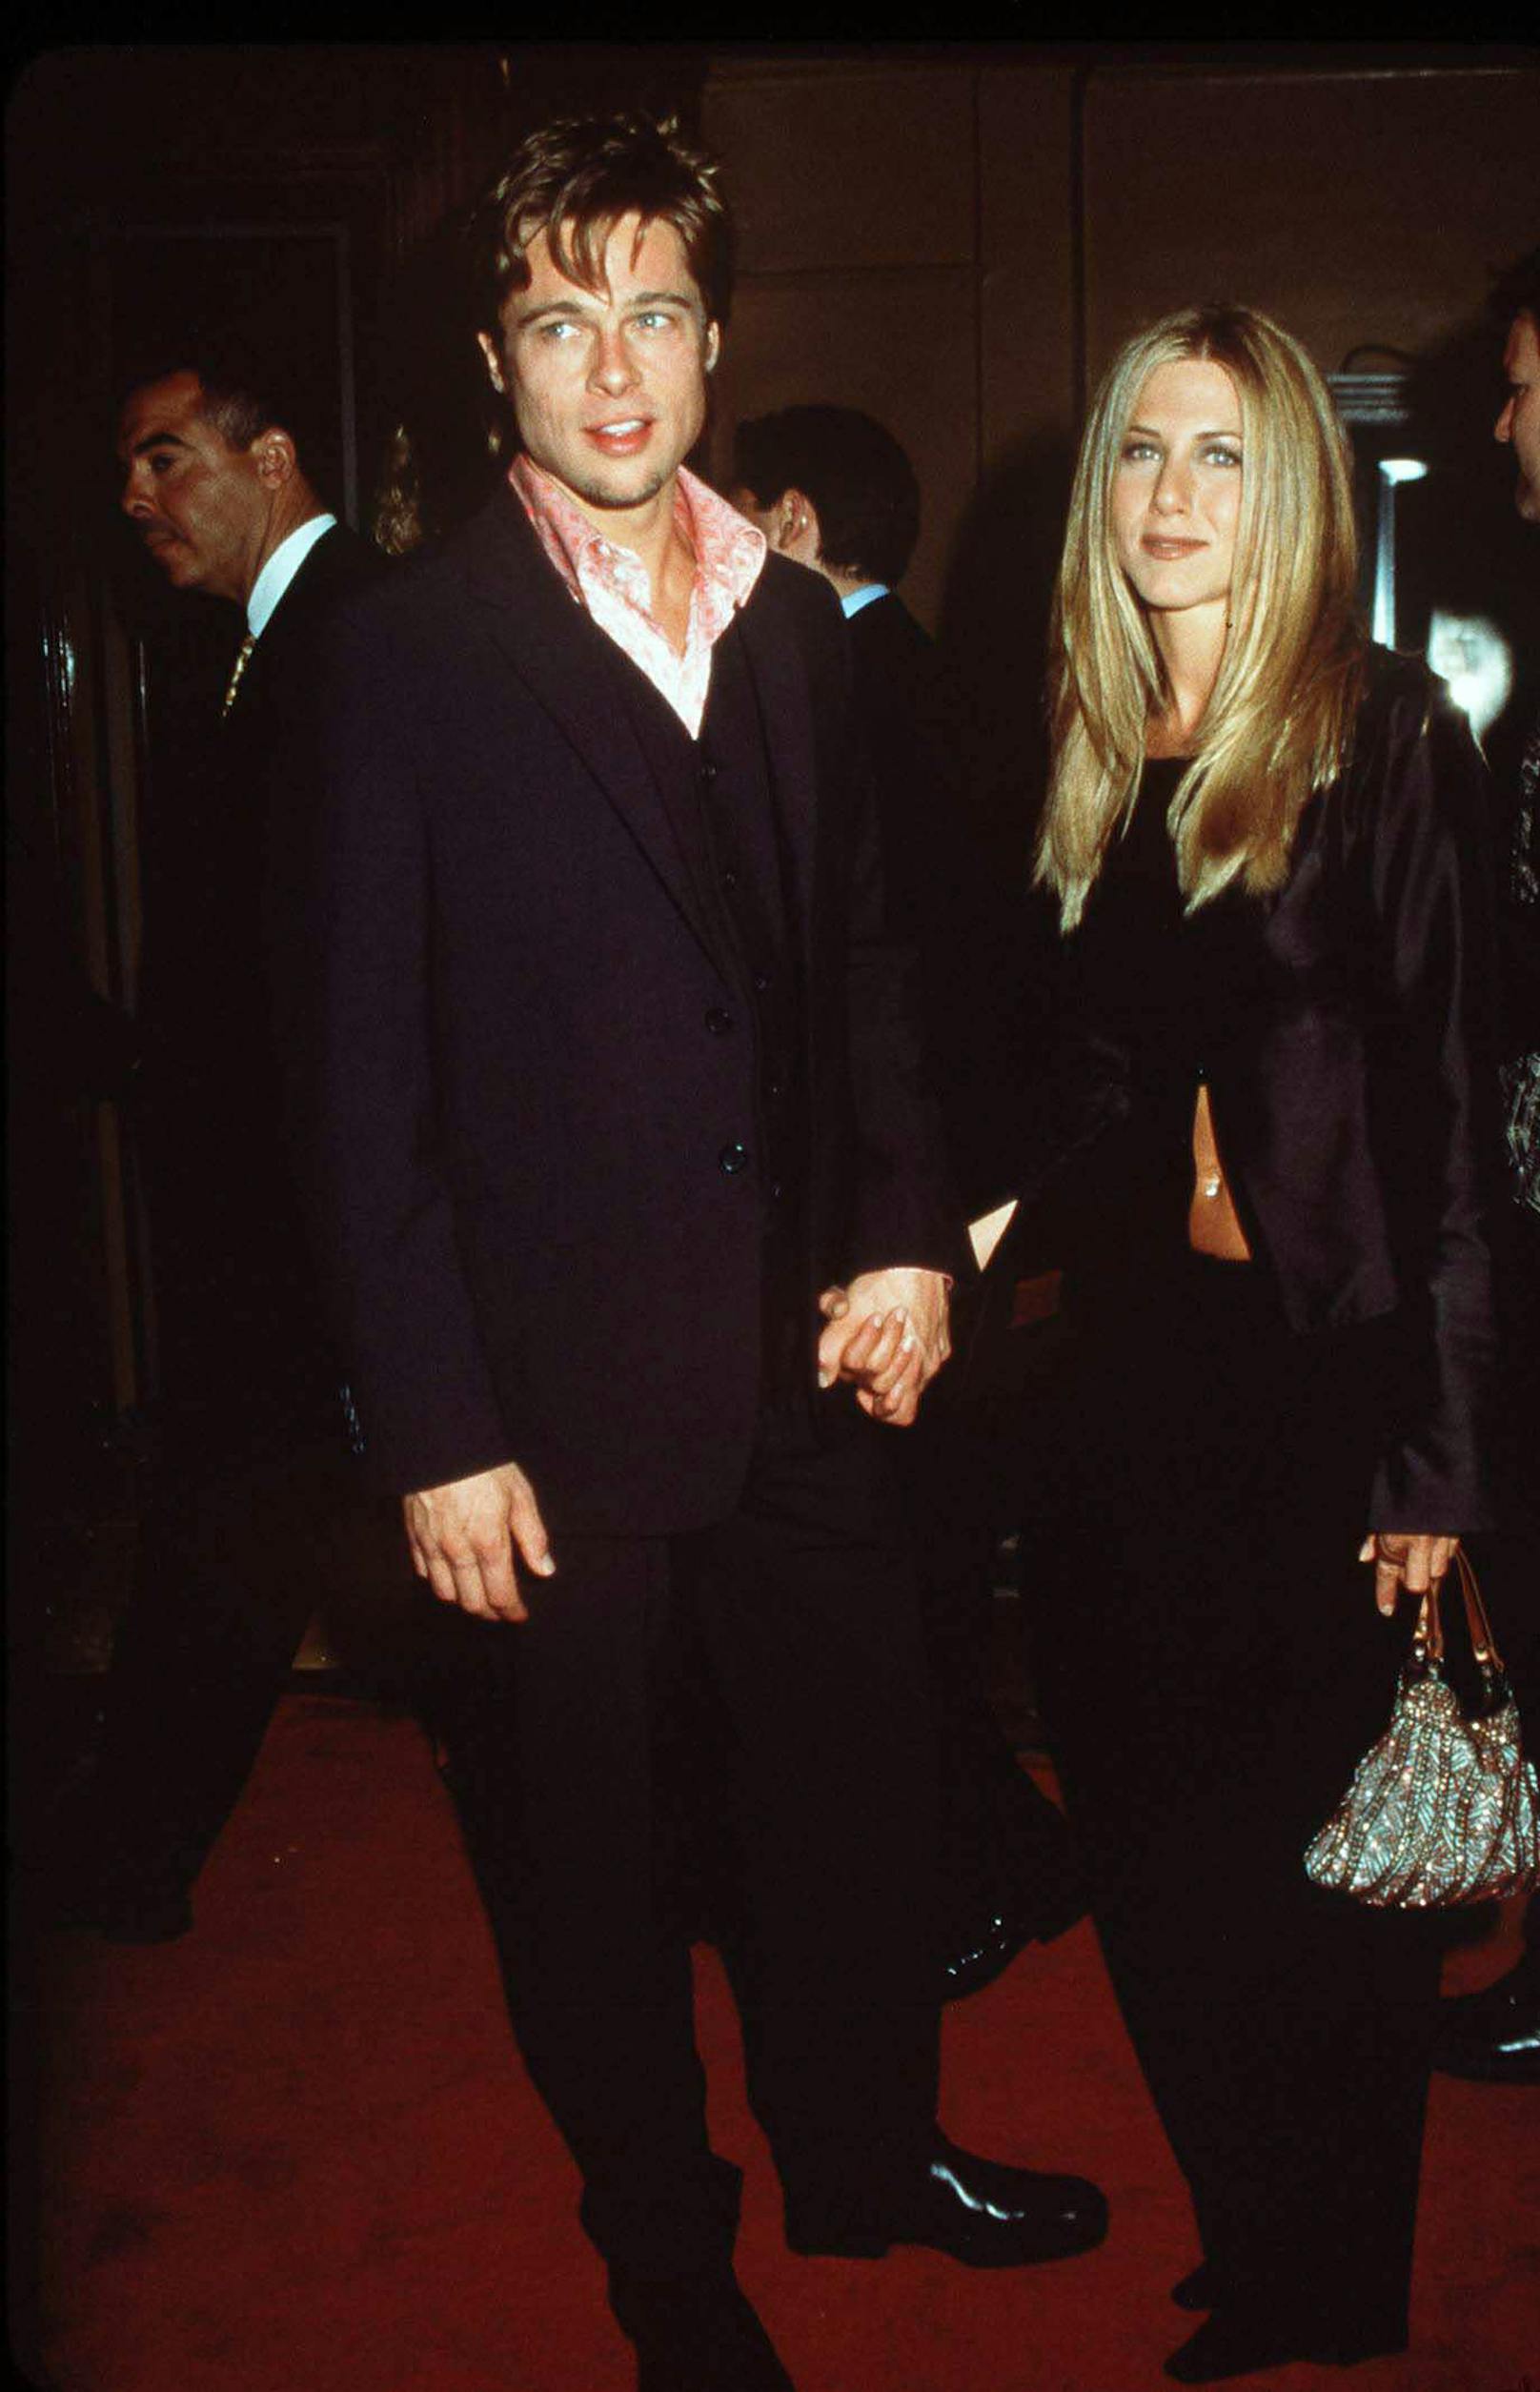 Jahrelang behauptete Brad Pitt, sich erst in Angelina Jolie verliebt zu haben, nachdem er sich von Ehefrau Jennifer Aniston getrennt hatte. Keiner wollte das so recht glauben, immerhin soll es am Set von Mr. und Mrs. Smith mit Angelina Jolie gefunkt haben. Jolie verplapperte sich schließlich und gab zu, dass Brad untreu gewesen war. Heute ist es auch mit Angelina aus - und Jen und er sind wieder Freunde.